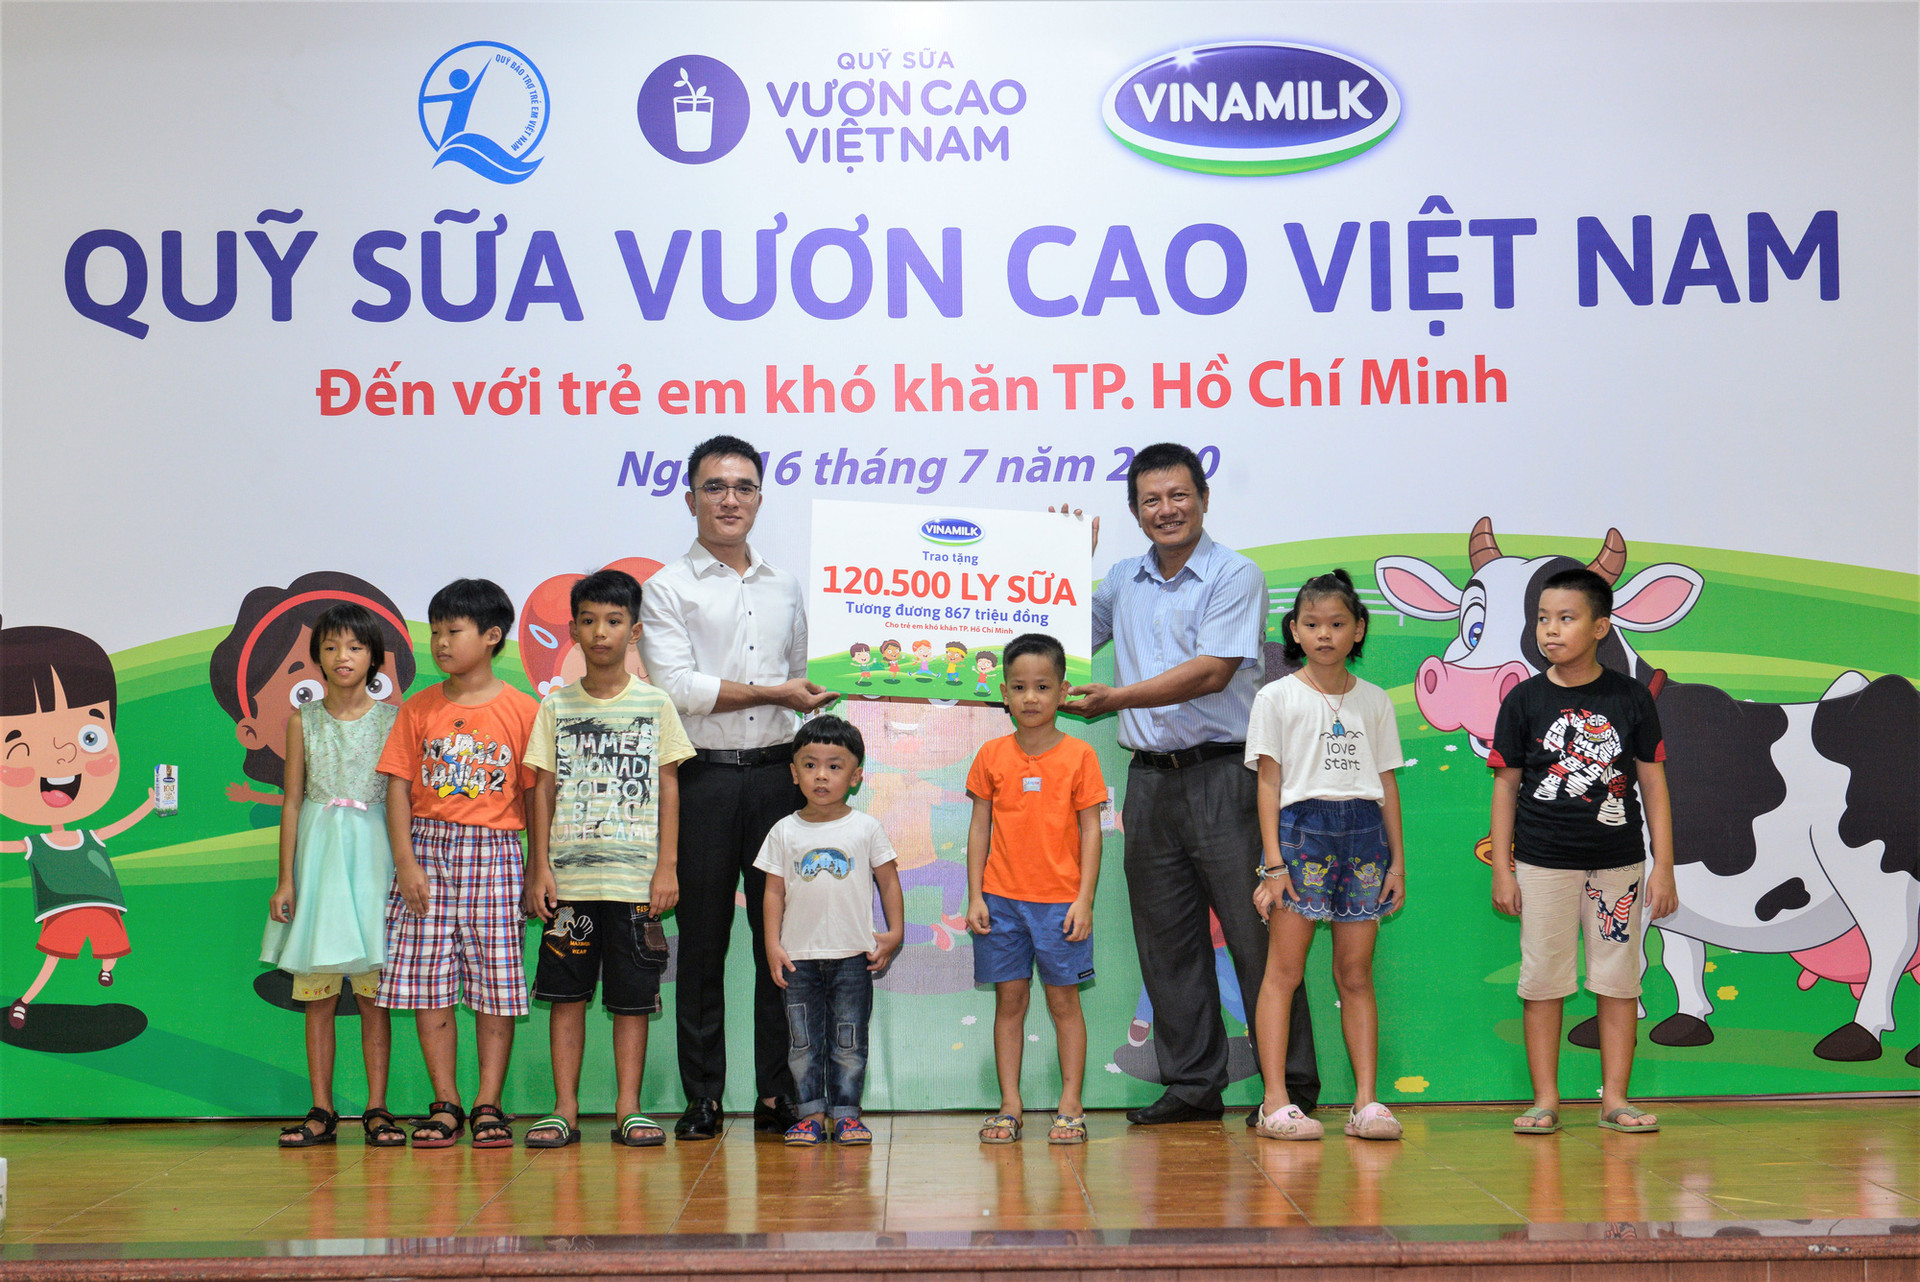 Đây cũng là 1 trong 10 trung tâm bảo trợ xã hội và các cơ sở nuôi dưỡng trẻ em mồ côi, khuyết tật, trẻ em có hoàn cảnh khó khăn của TP HCM được Quỹ sữa Vươn cao Việt Nam và công ty Vinamilk hỗ trợ sữa năm nay.